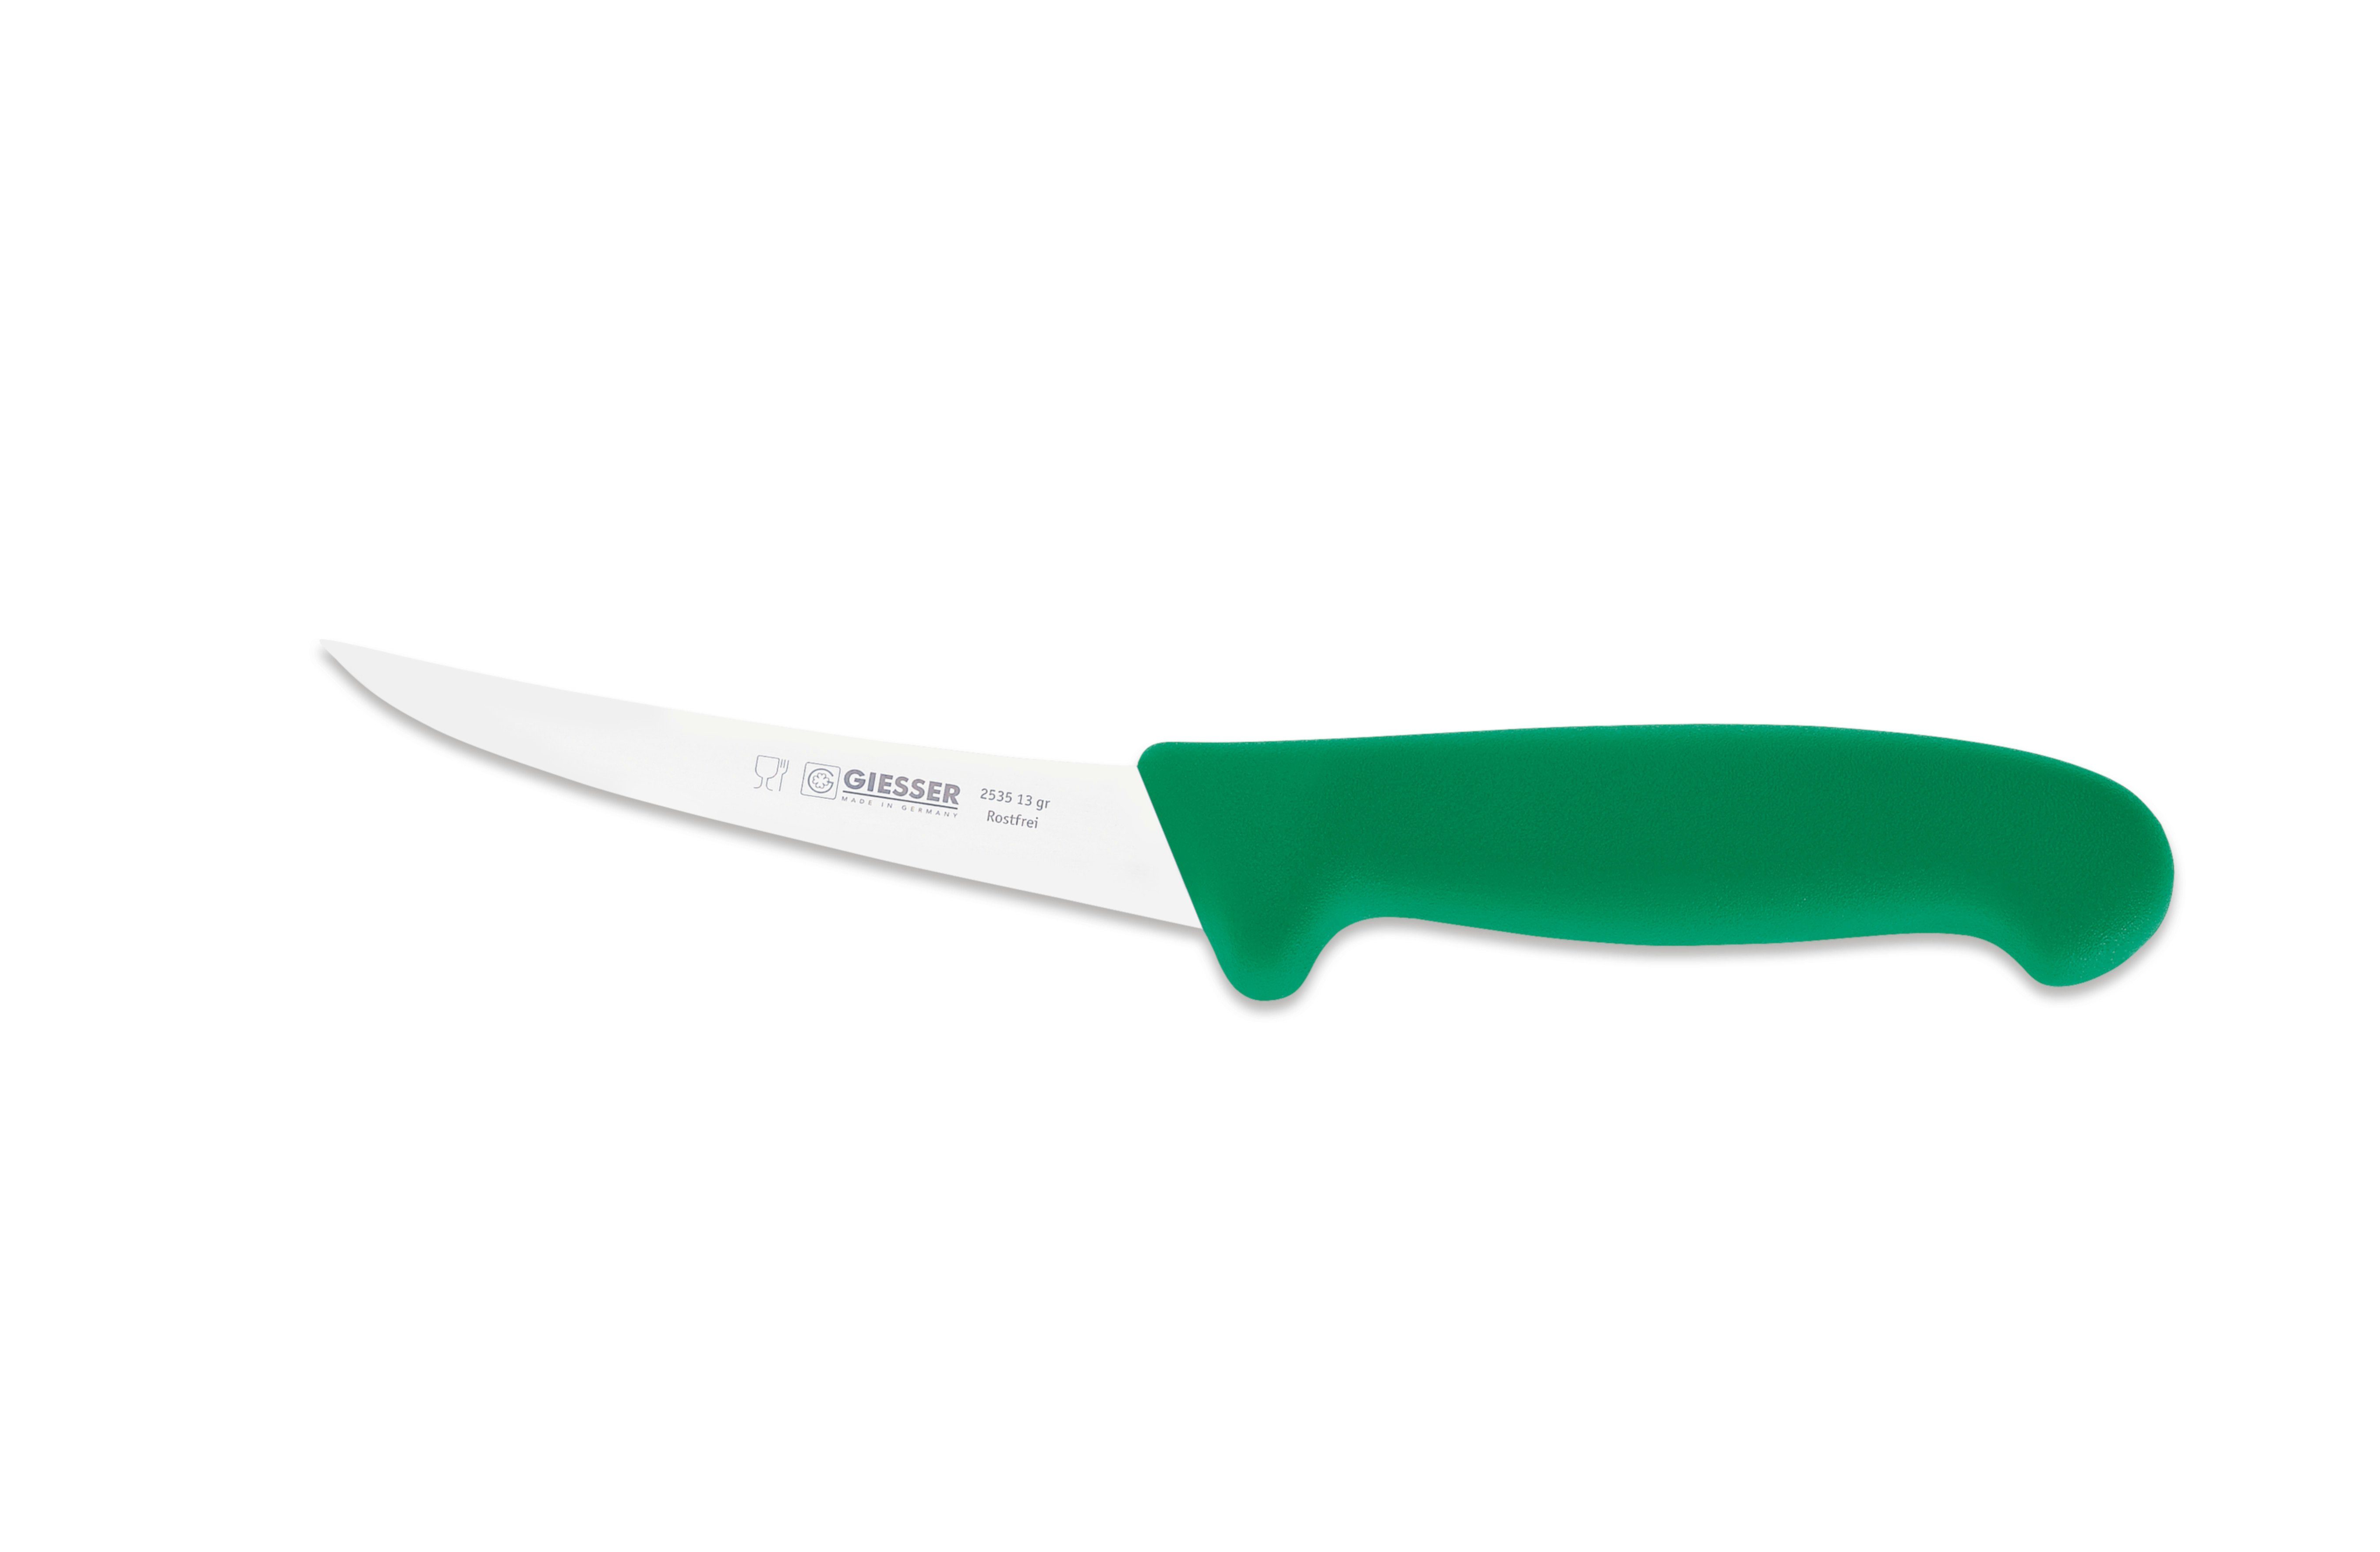 Giesser Messer Ausbeinmesser Fleischermesser 2505 13-17, Klingenstärke: sehr flexibel, flexibel, stark Grün